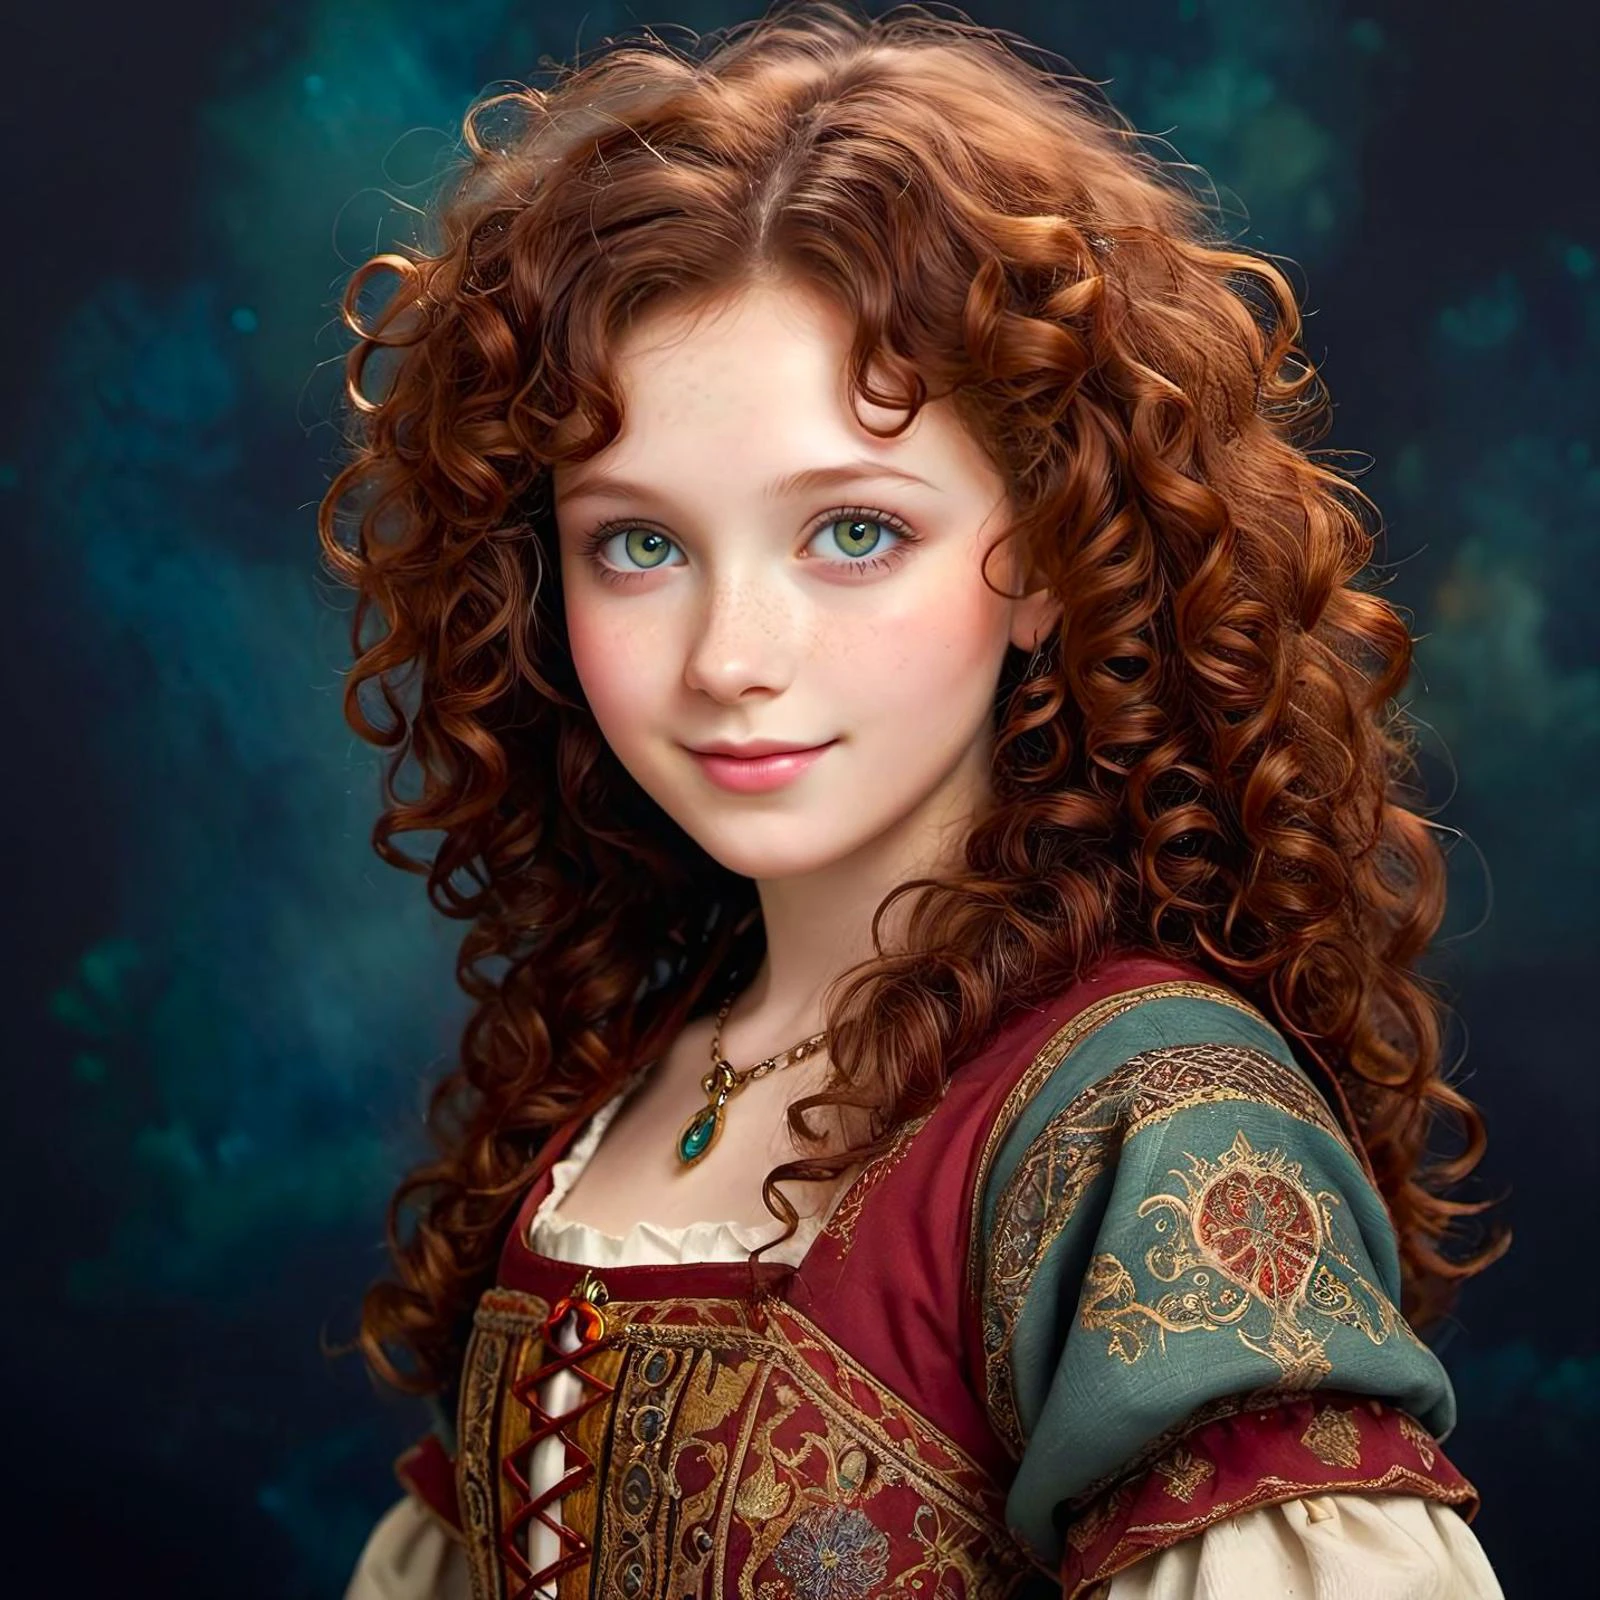 fantasía medieval,  una chica de porcelana de 20 años , feliz,  textura de piel orgánica suave, cara delicada, jade eyes, pelo rizado castaño rojo oscuro, ecléctico, fondo oscuro